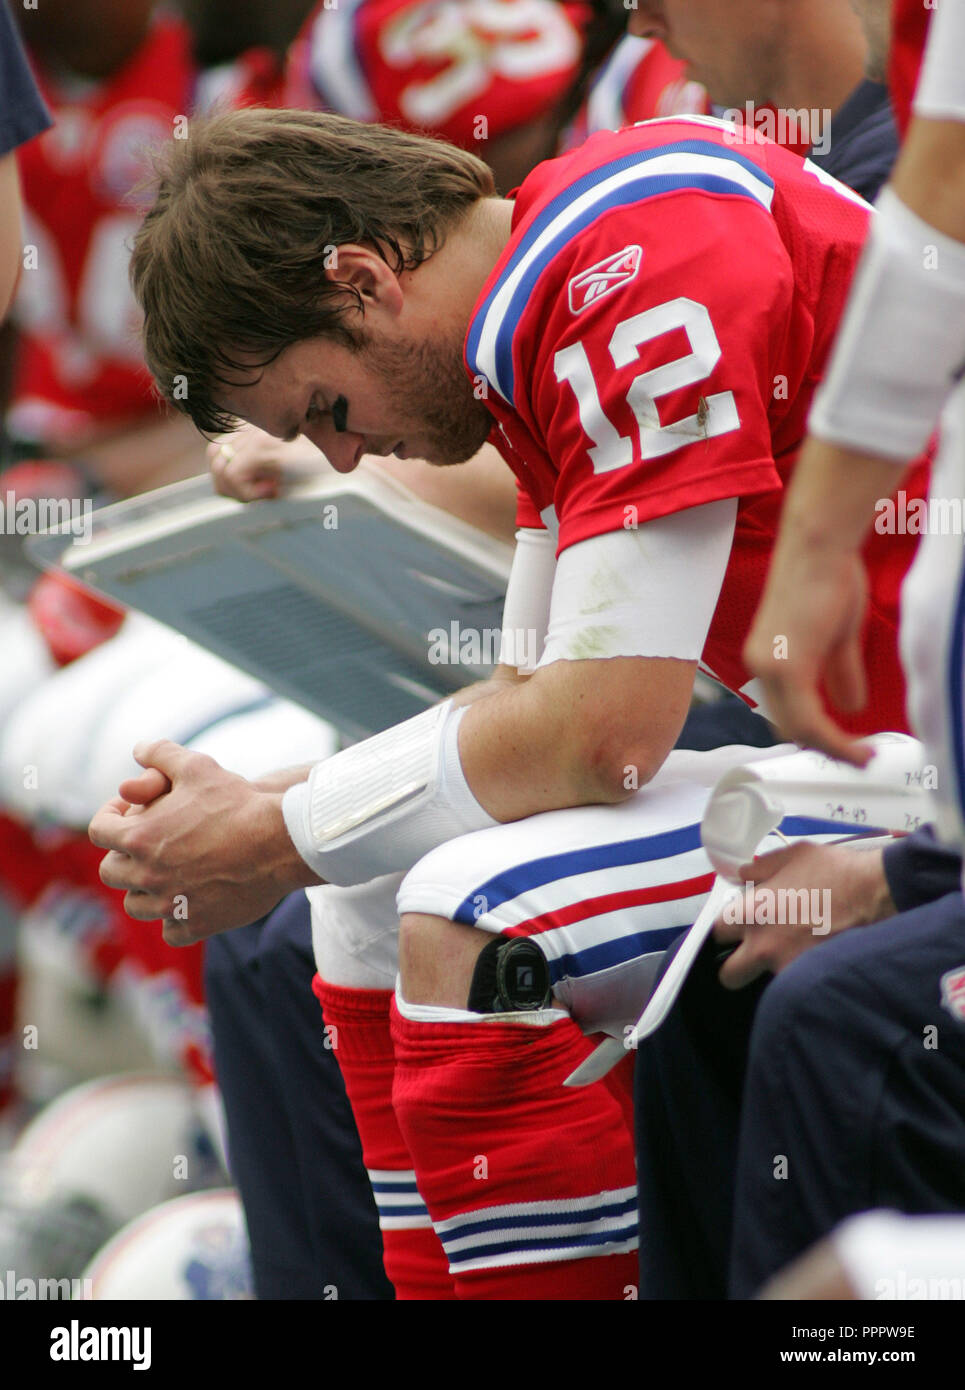 Niedergeschlagen New England Patriots Quarterback Tom Brady sitzt auf der Bank in der Nähe der Spiele gegen die Miami Dolphins an landshark Stadium in Miami am 6. Dezember 2009. Stockfoto